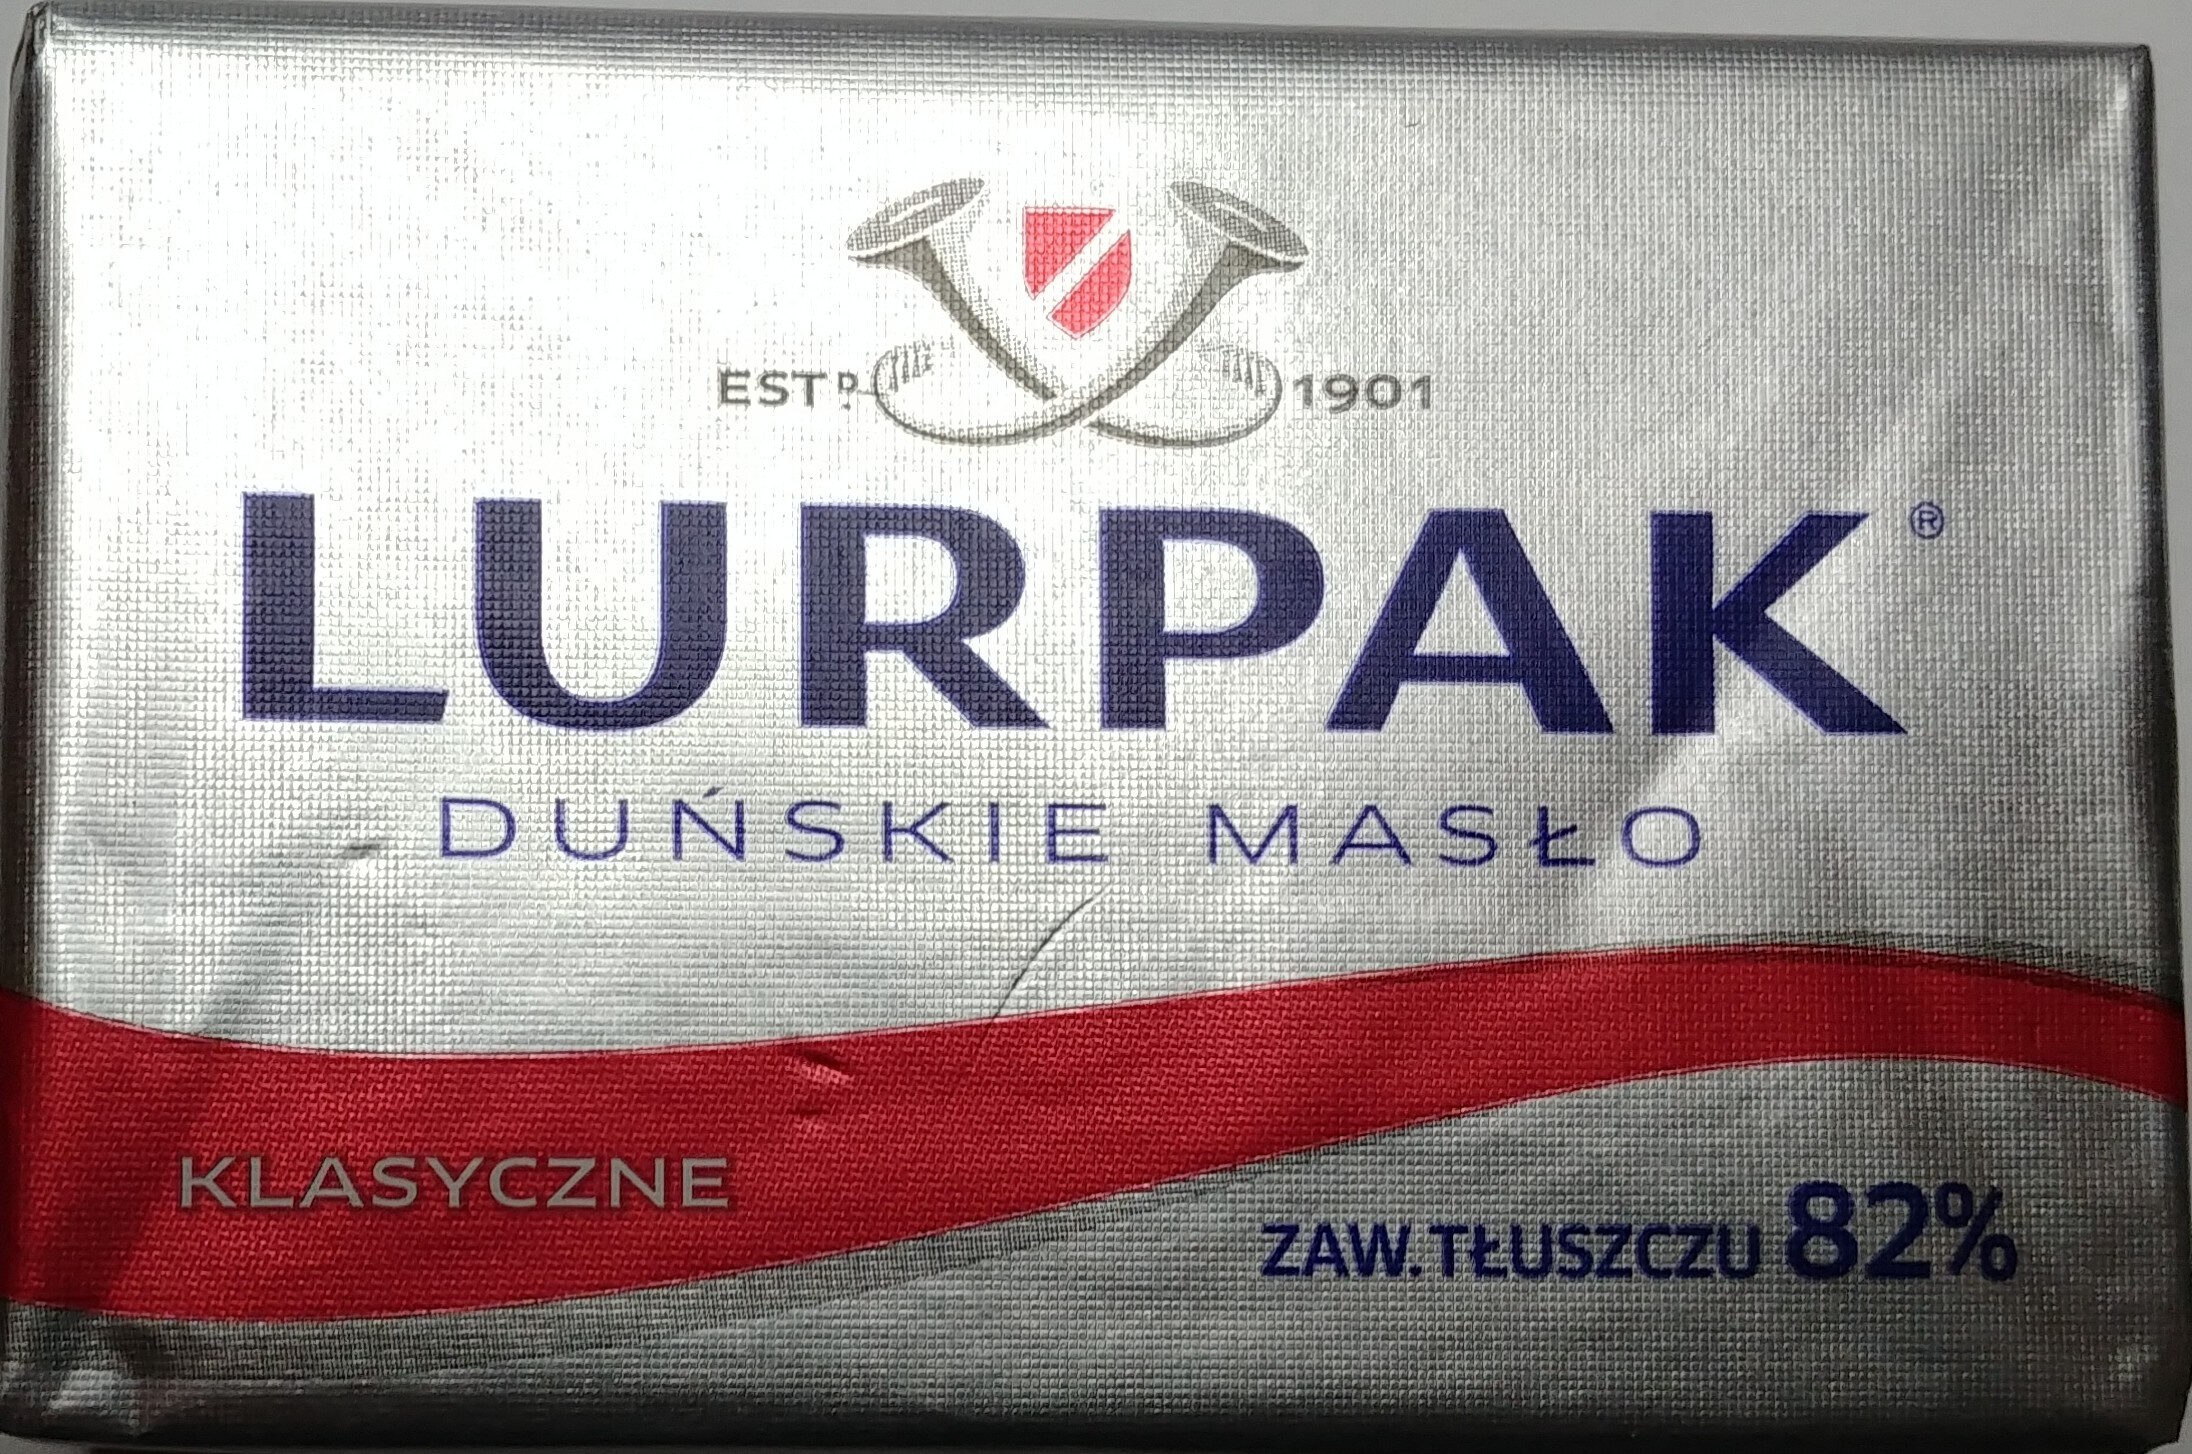 Duńskie masło - Product - pl